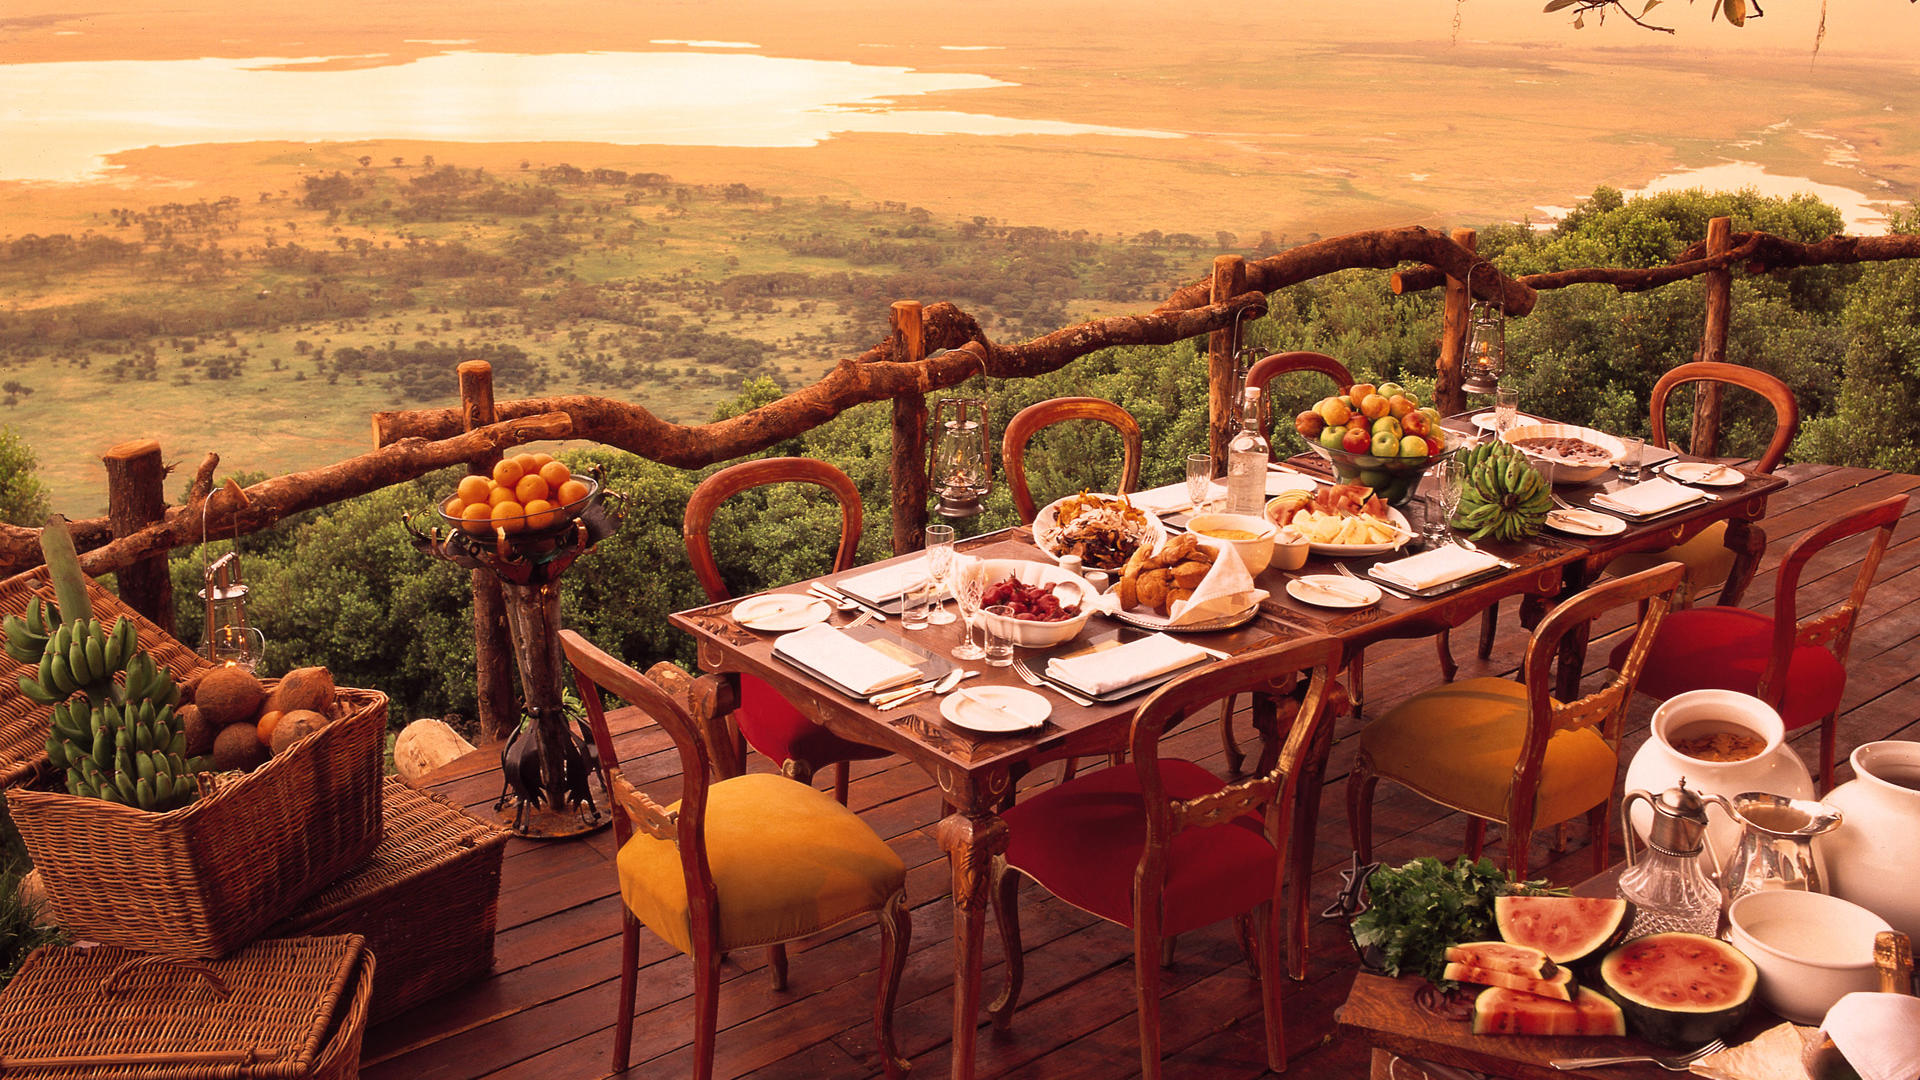 Красивые и вкусные рестораны. Сафари Нгоронгоро кратер Лодж. Терраса с видом на природу. Ресторан с видом на горы. Ресторан на природе.